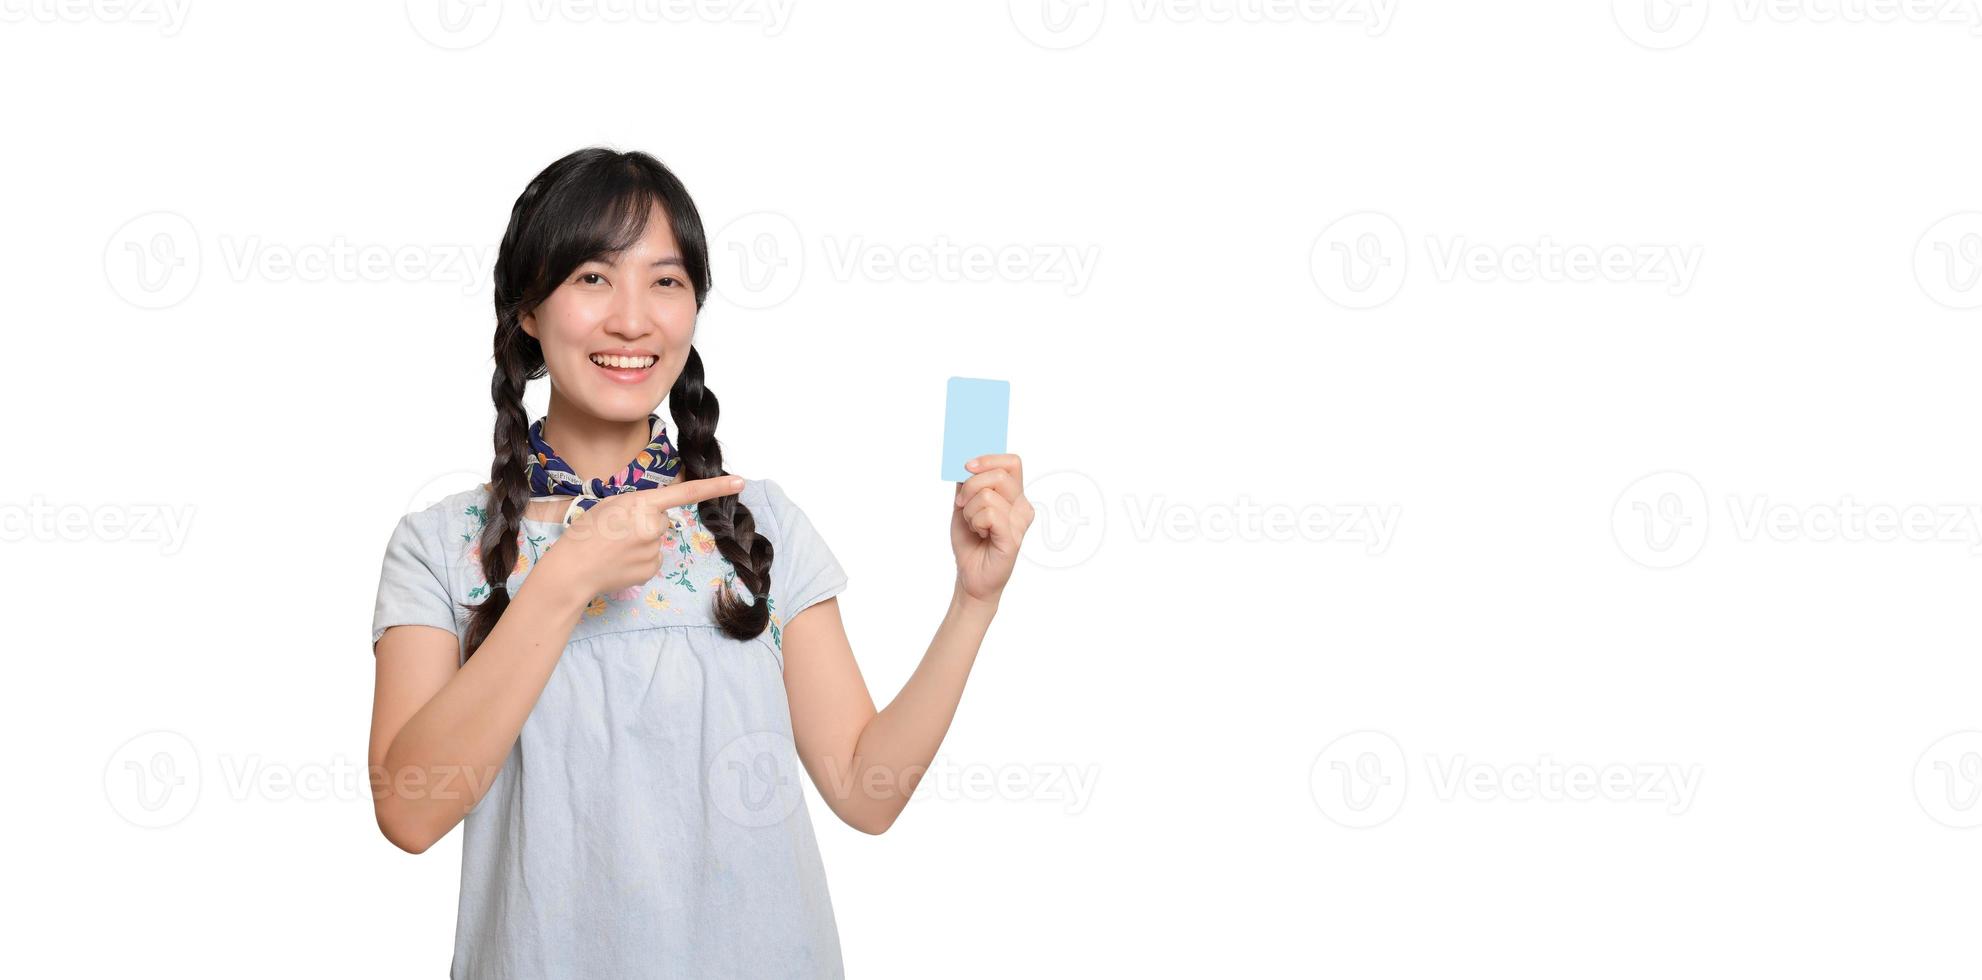 portrait de la belle jeune femme asiatique heureuse en robe denim tenant une carte de crédit sur fond blanc photo